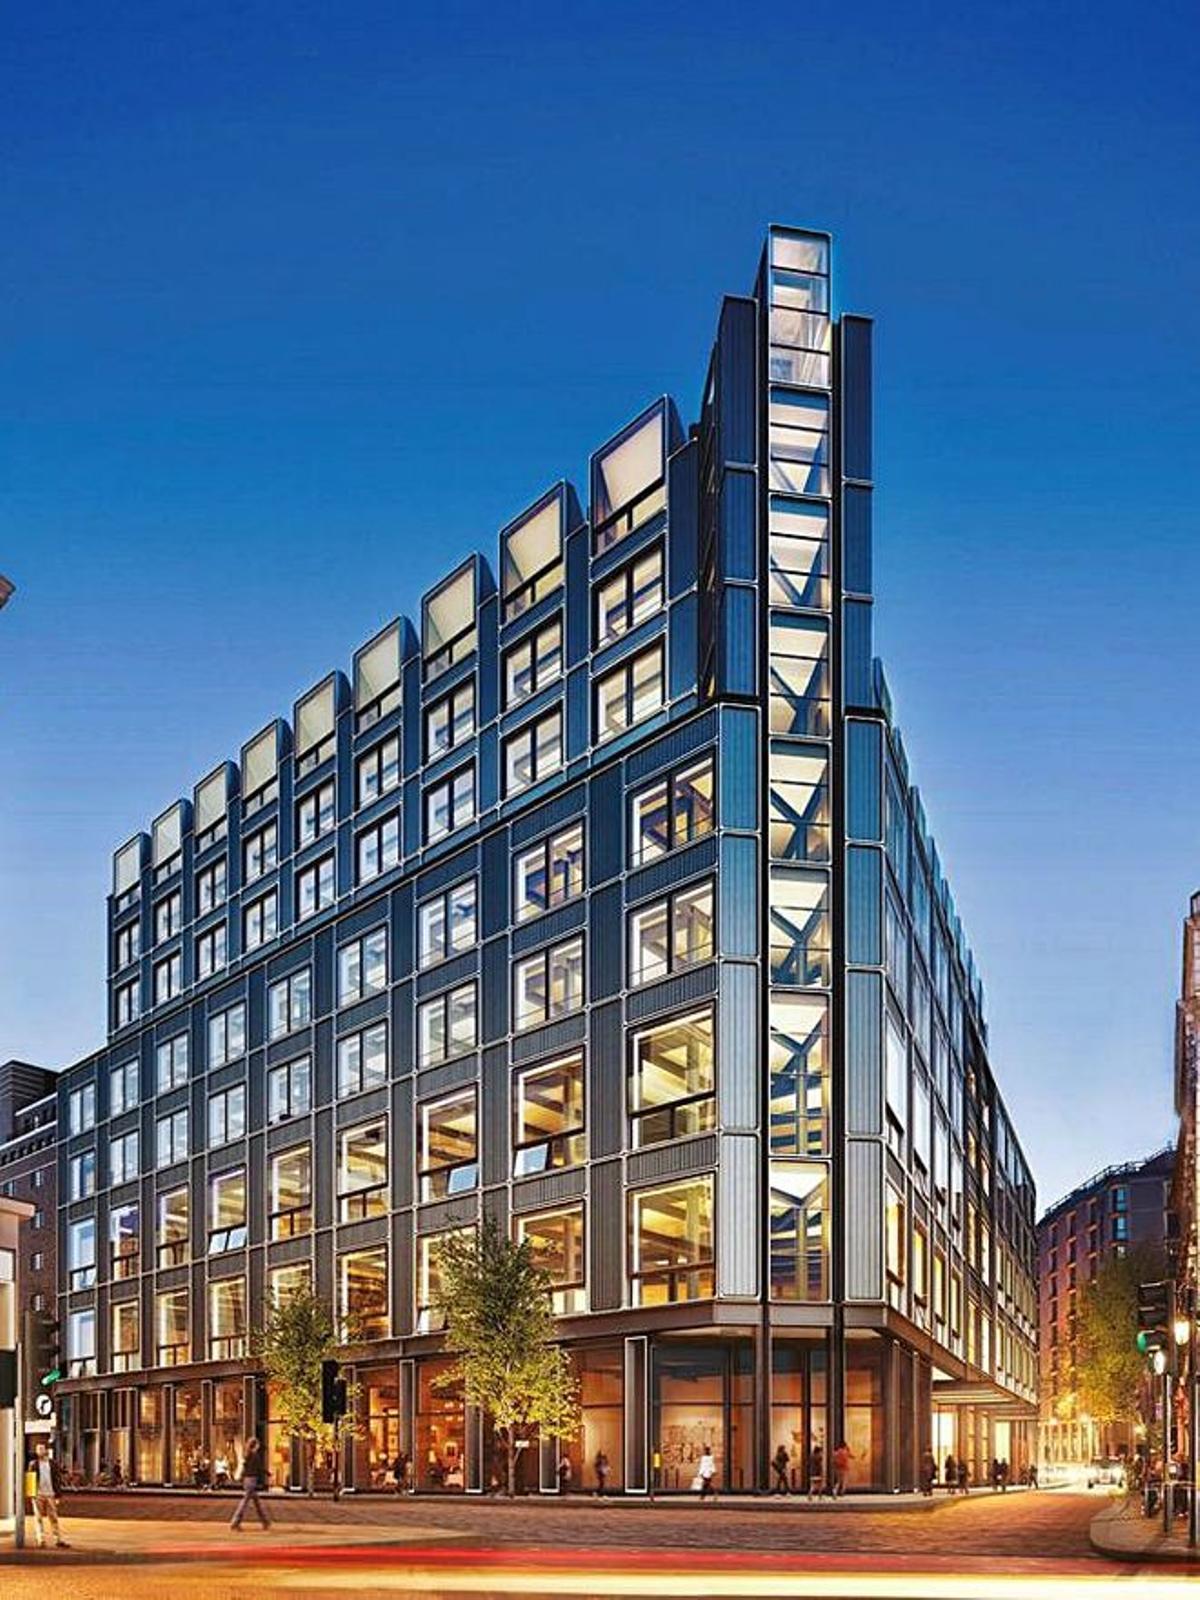 The Post Building (Londres). Londres es una de las ubicaciones preferidas por Ortega para invertir en ladrillo. En diciembre de 2019 compró por 700 millones de euros la sede de la consultora McKinsey, un gran edificio de oficinas en las inmediaciones de Oxford Street.